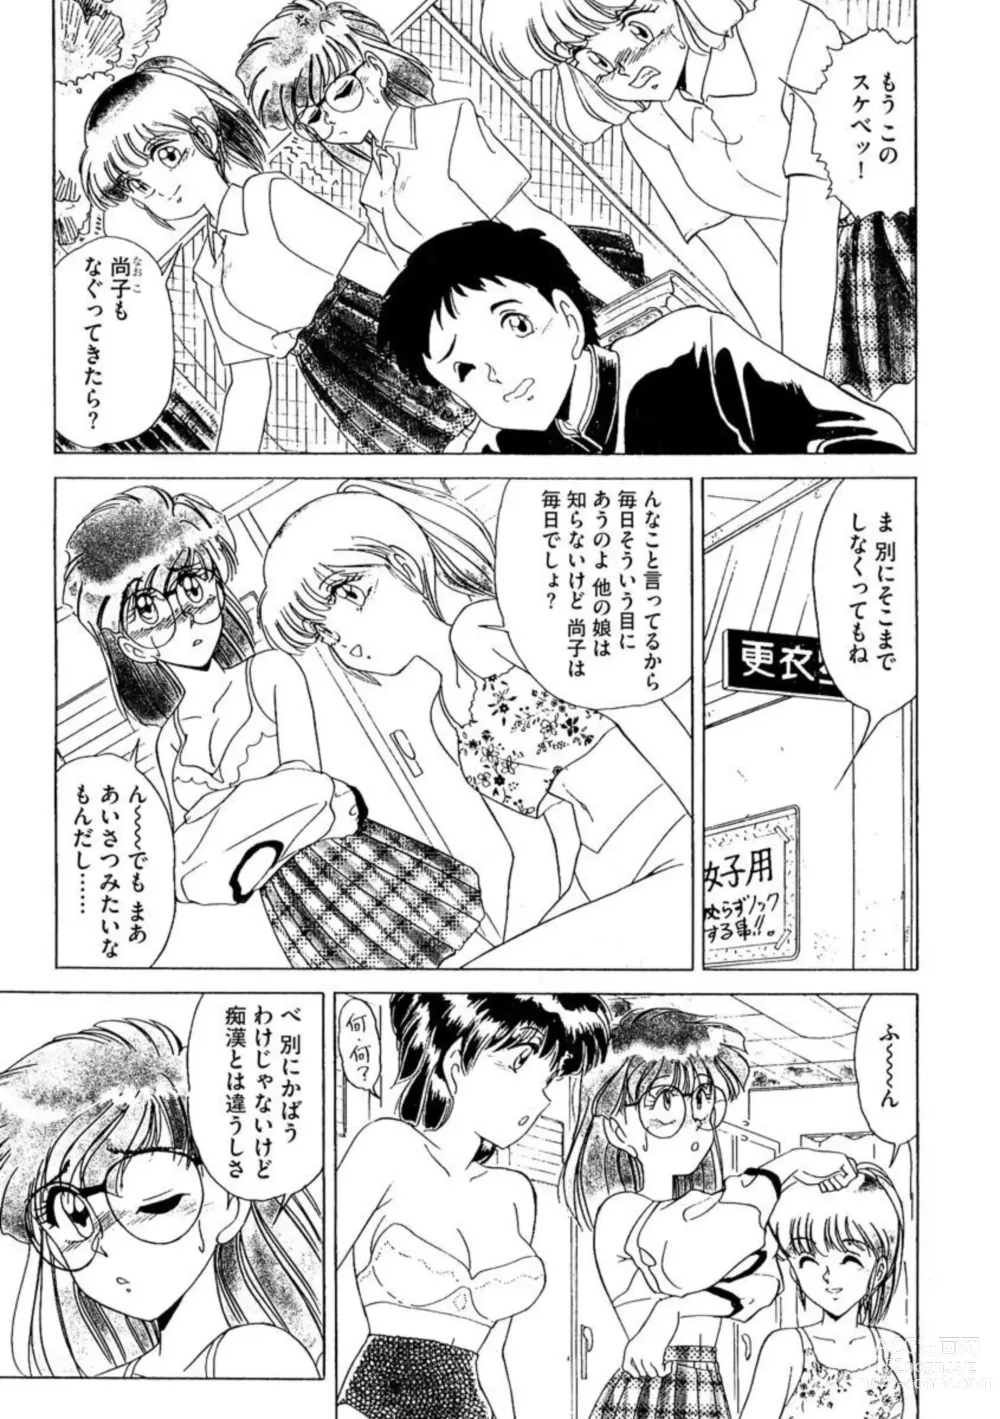 Page 4 of manga Ichiban Kimochi no ī o Furo 1